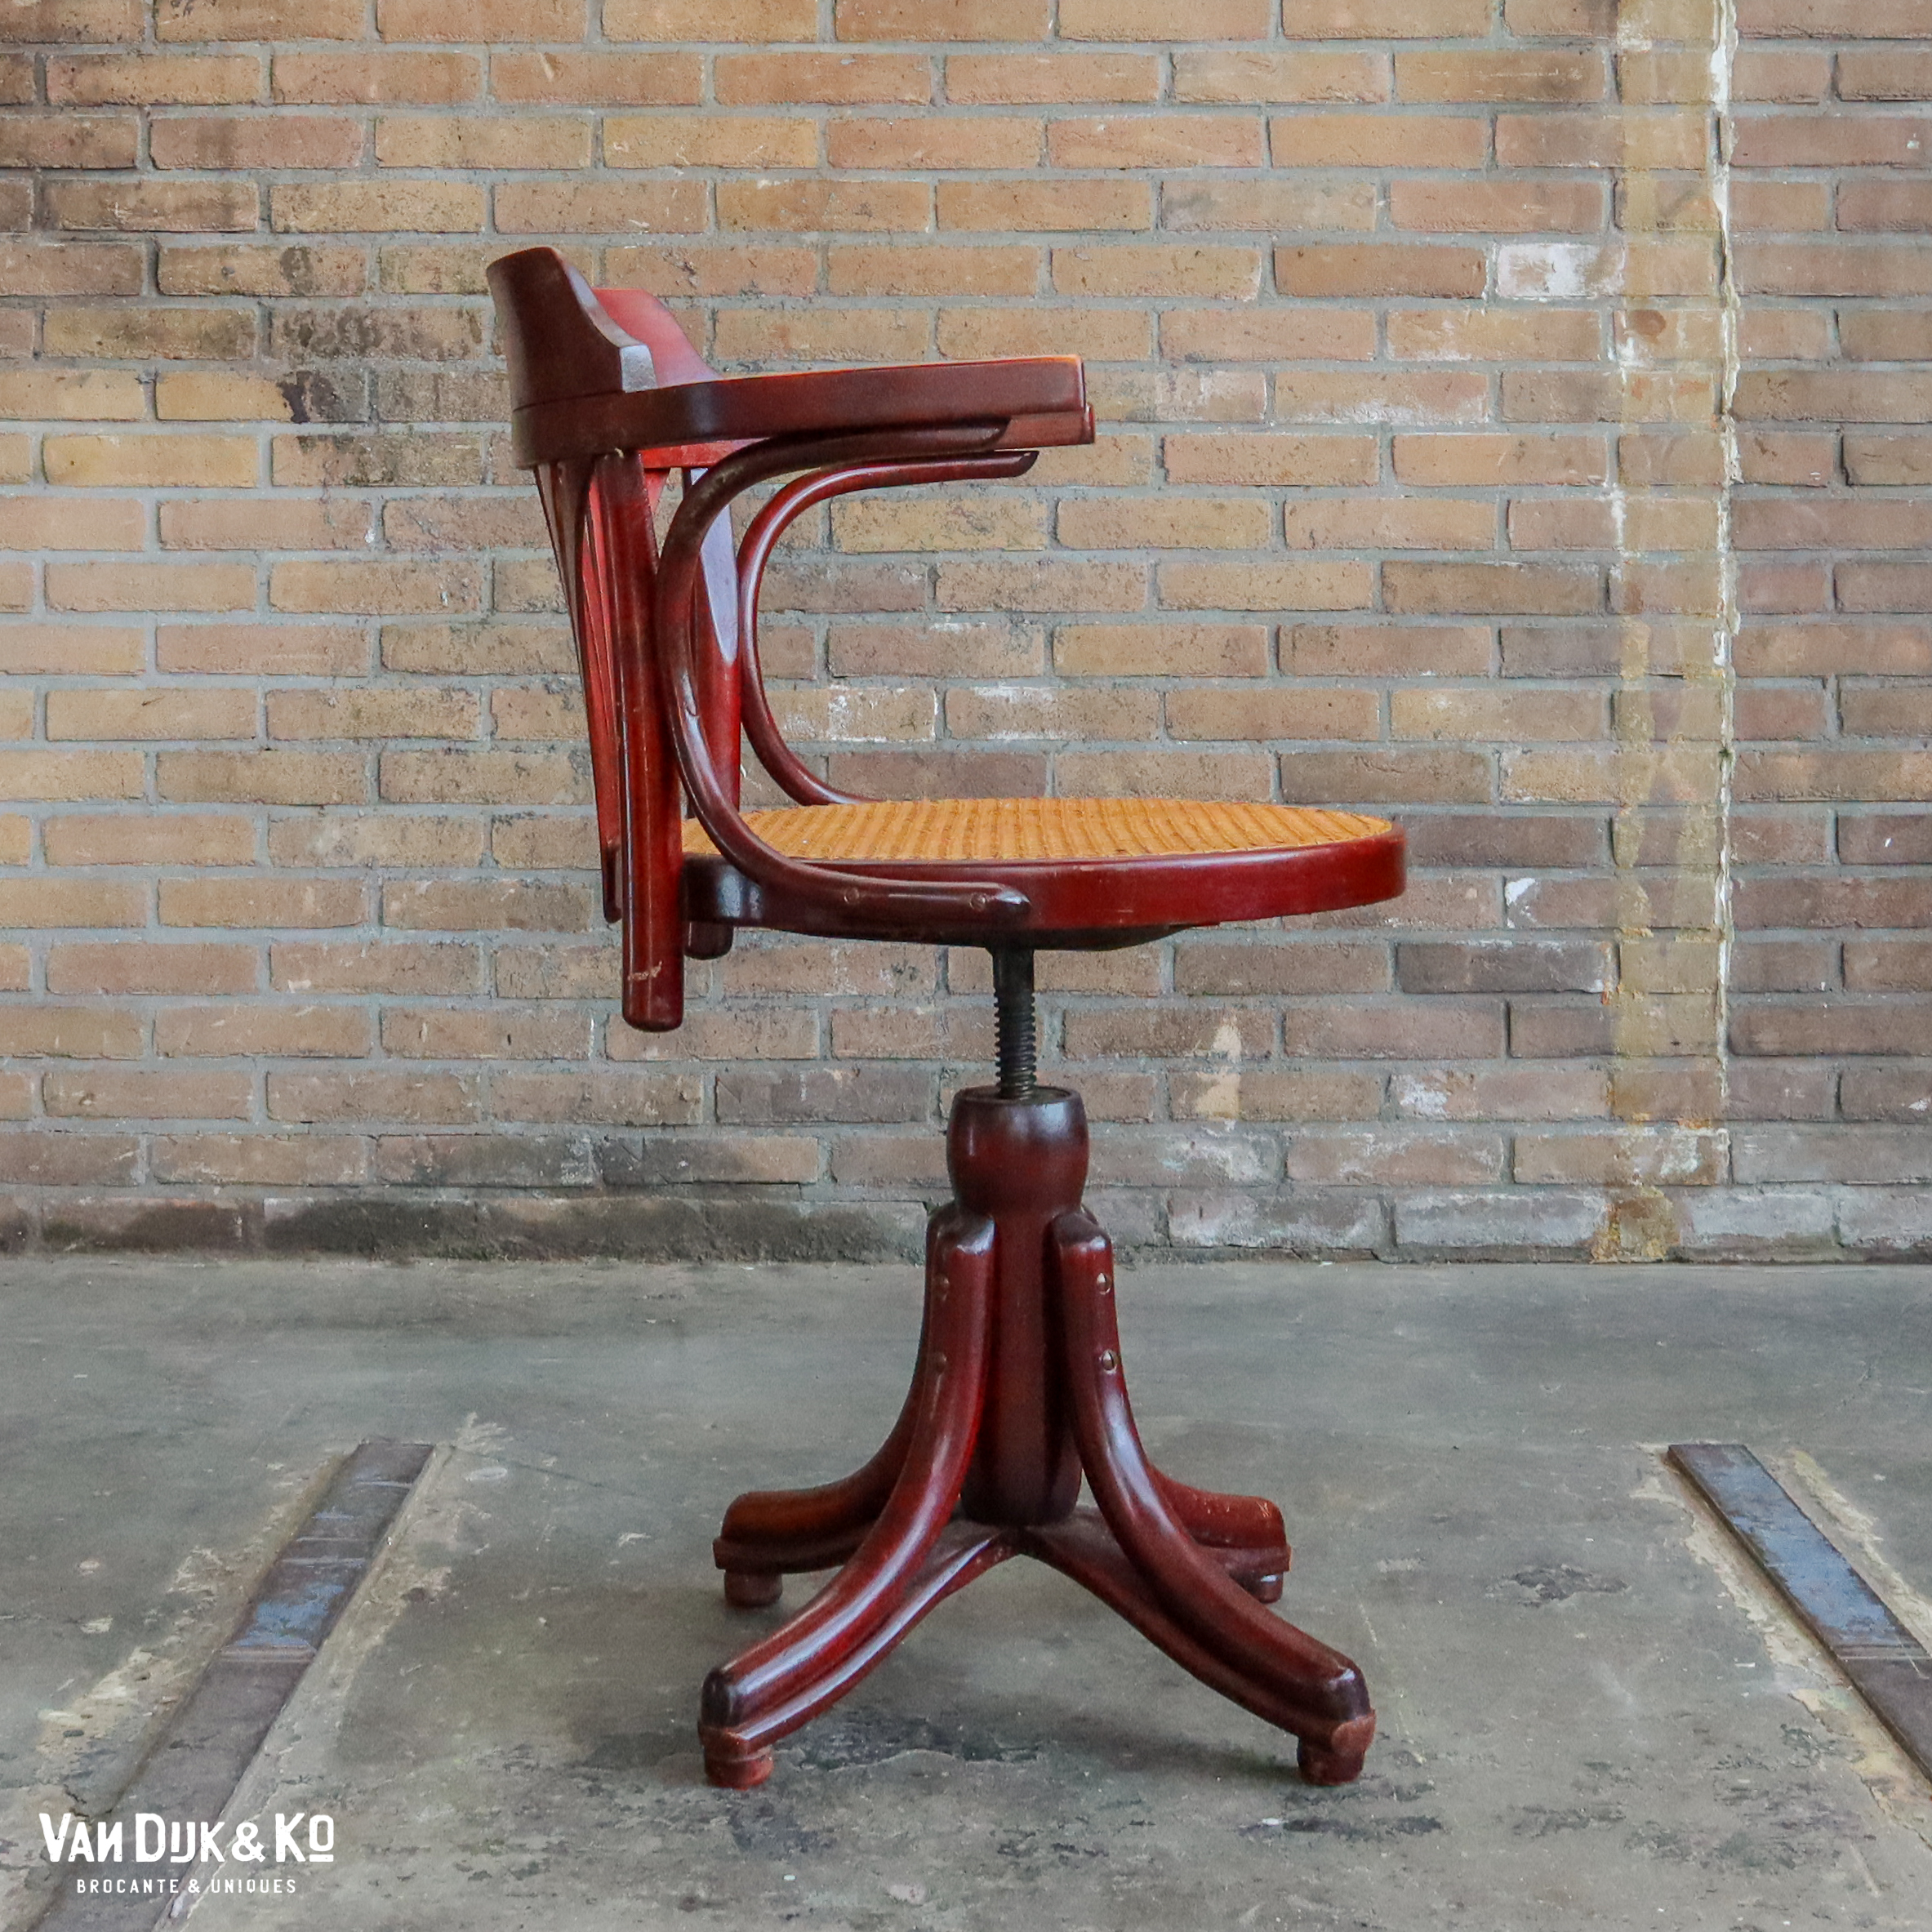 Verbetering uitgebreid Milieuactivist Vintage bureaustoel » Van Dijk & Ko